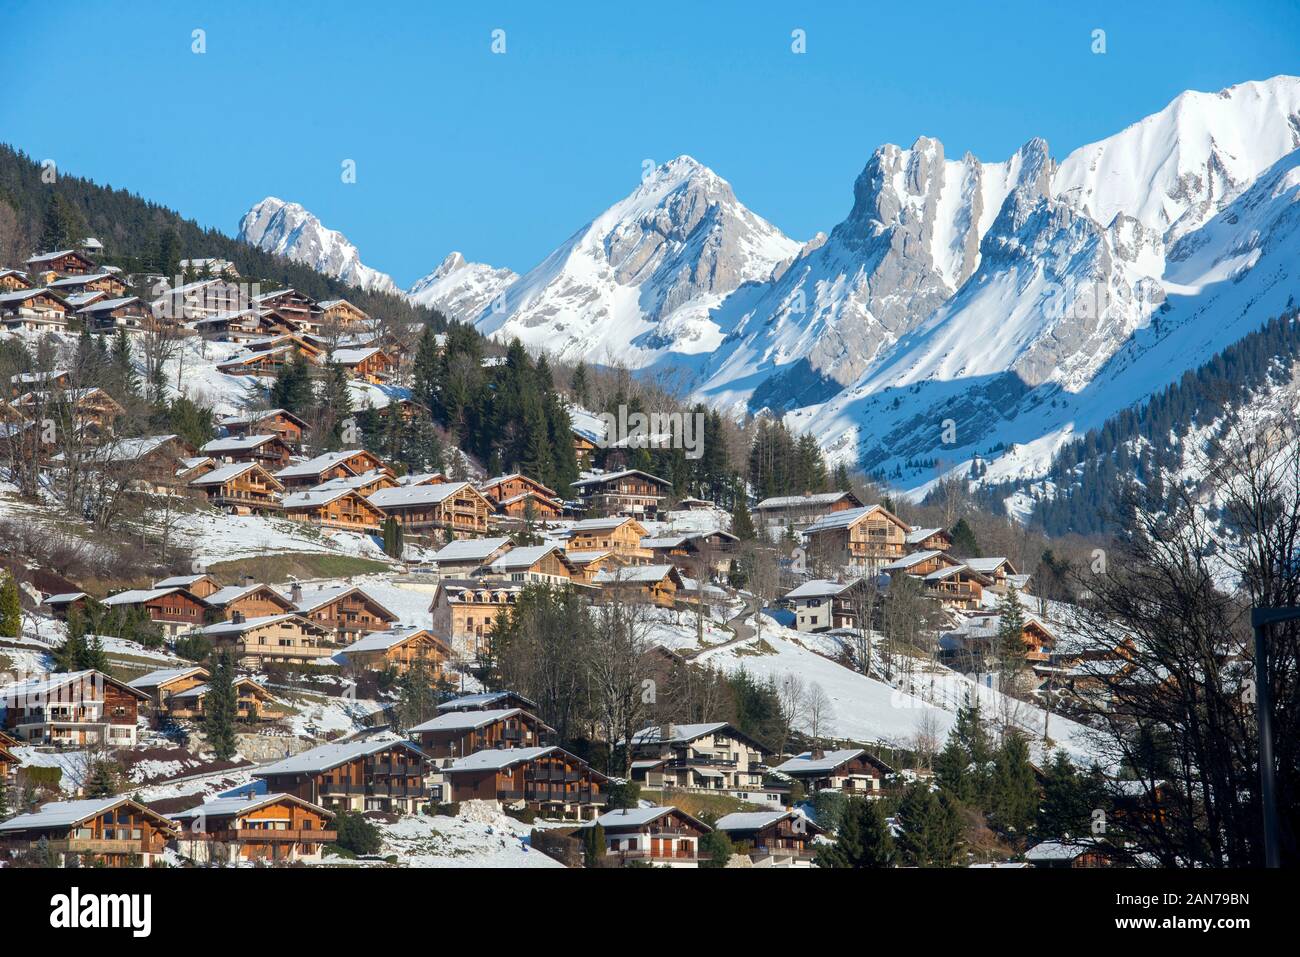 Station de ski de La Clusaz et montagnes couvertes de neige ensoleillée, située dans le département de l'Auvergne-Rhône-Alpes Banque D'Images